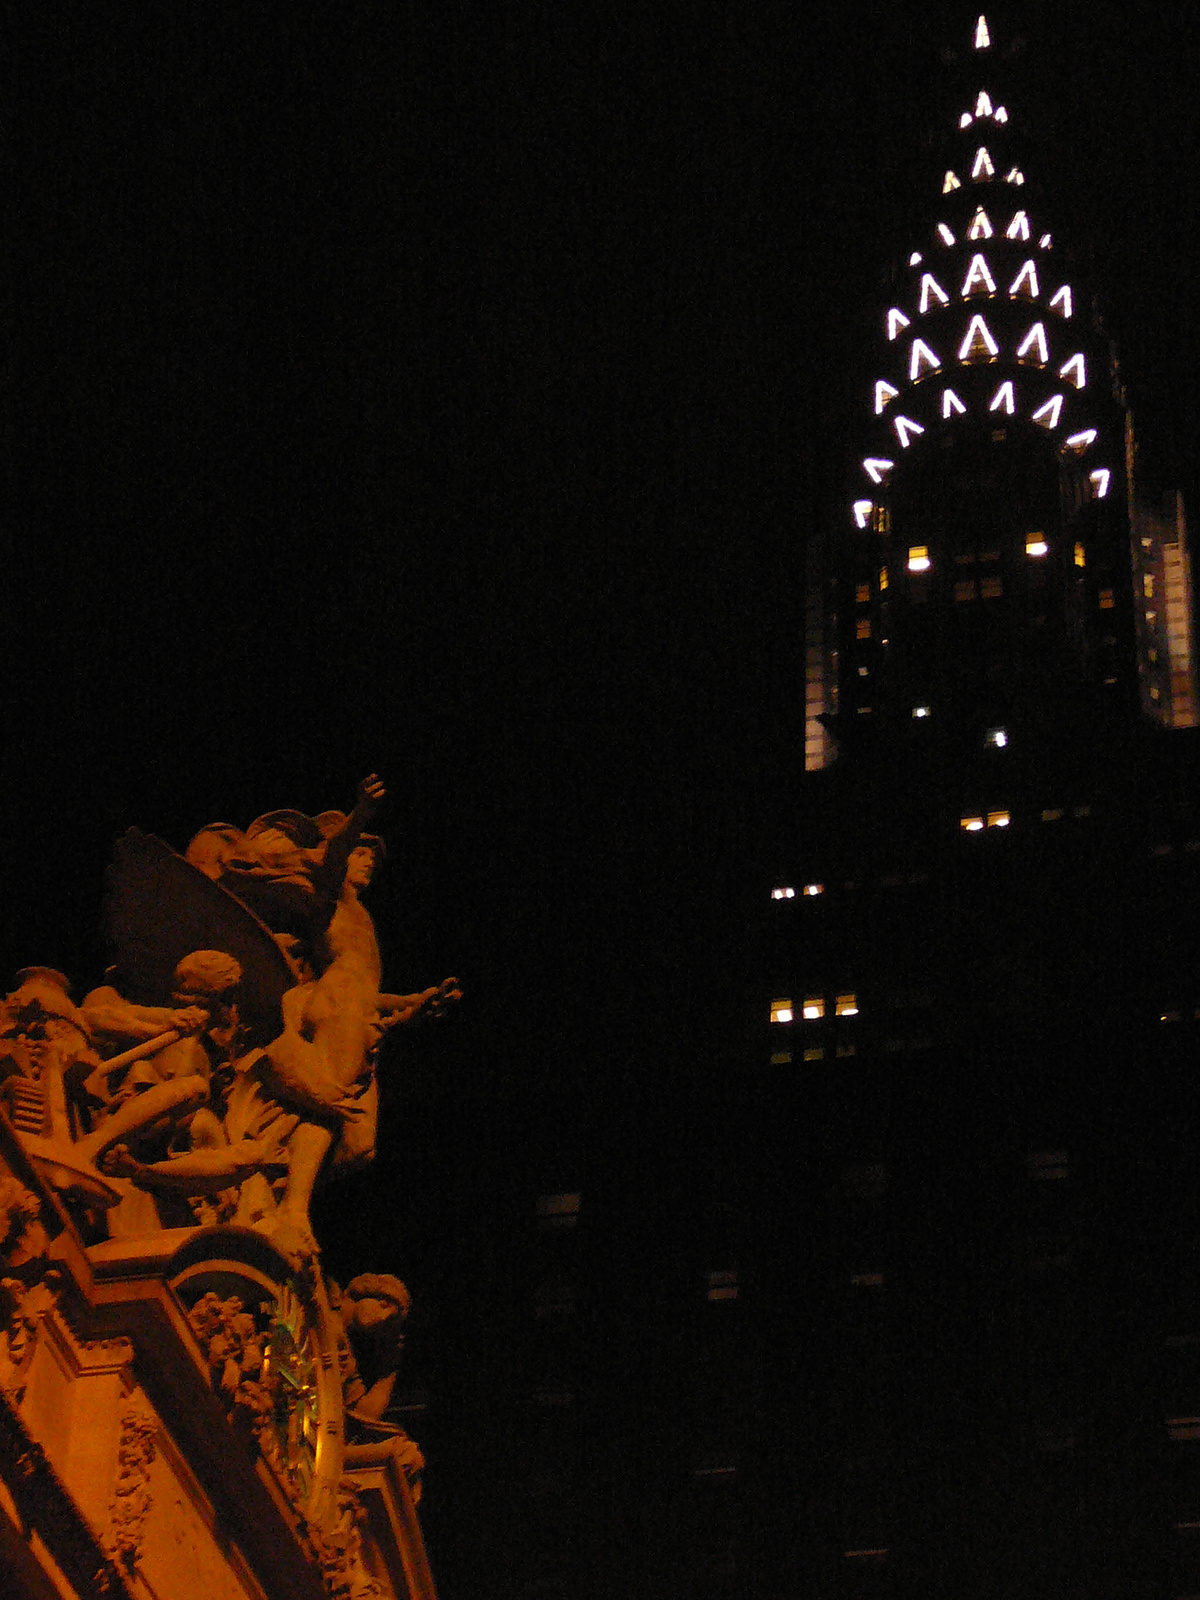 New York - Chrysler Building